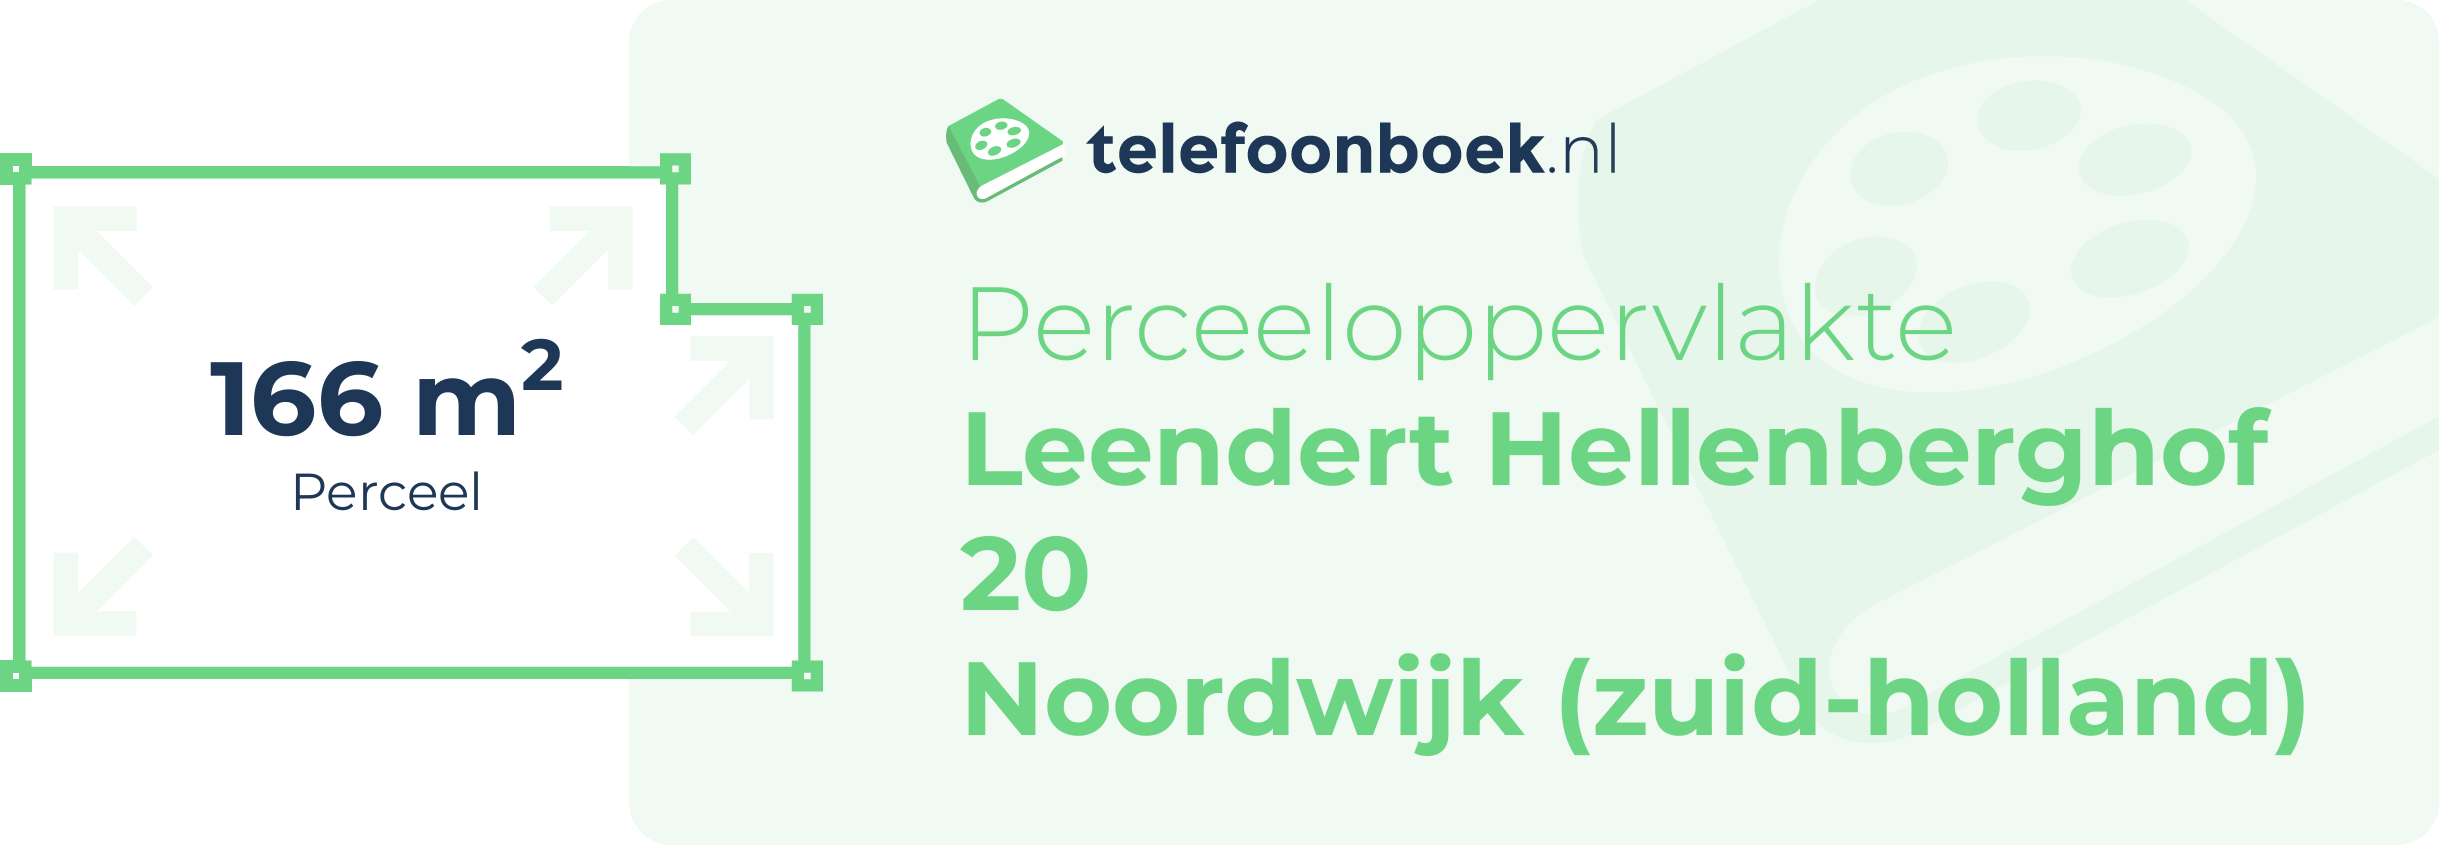 Perceeloppervlakte Leendert Hellenberghof 20 Noordwijk (Zuid-Holland)